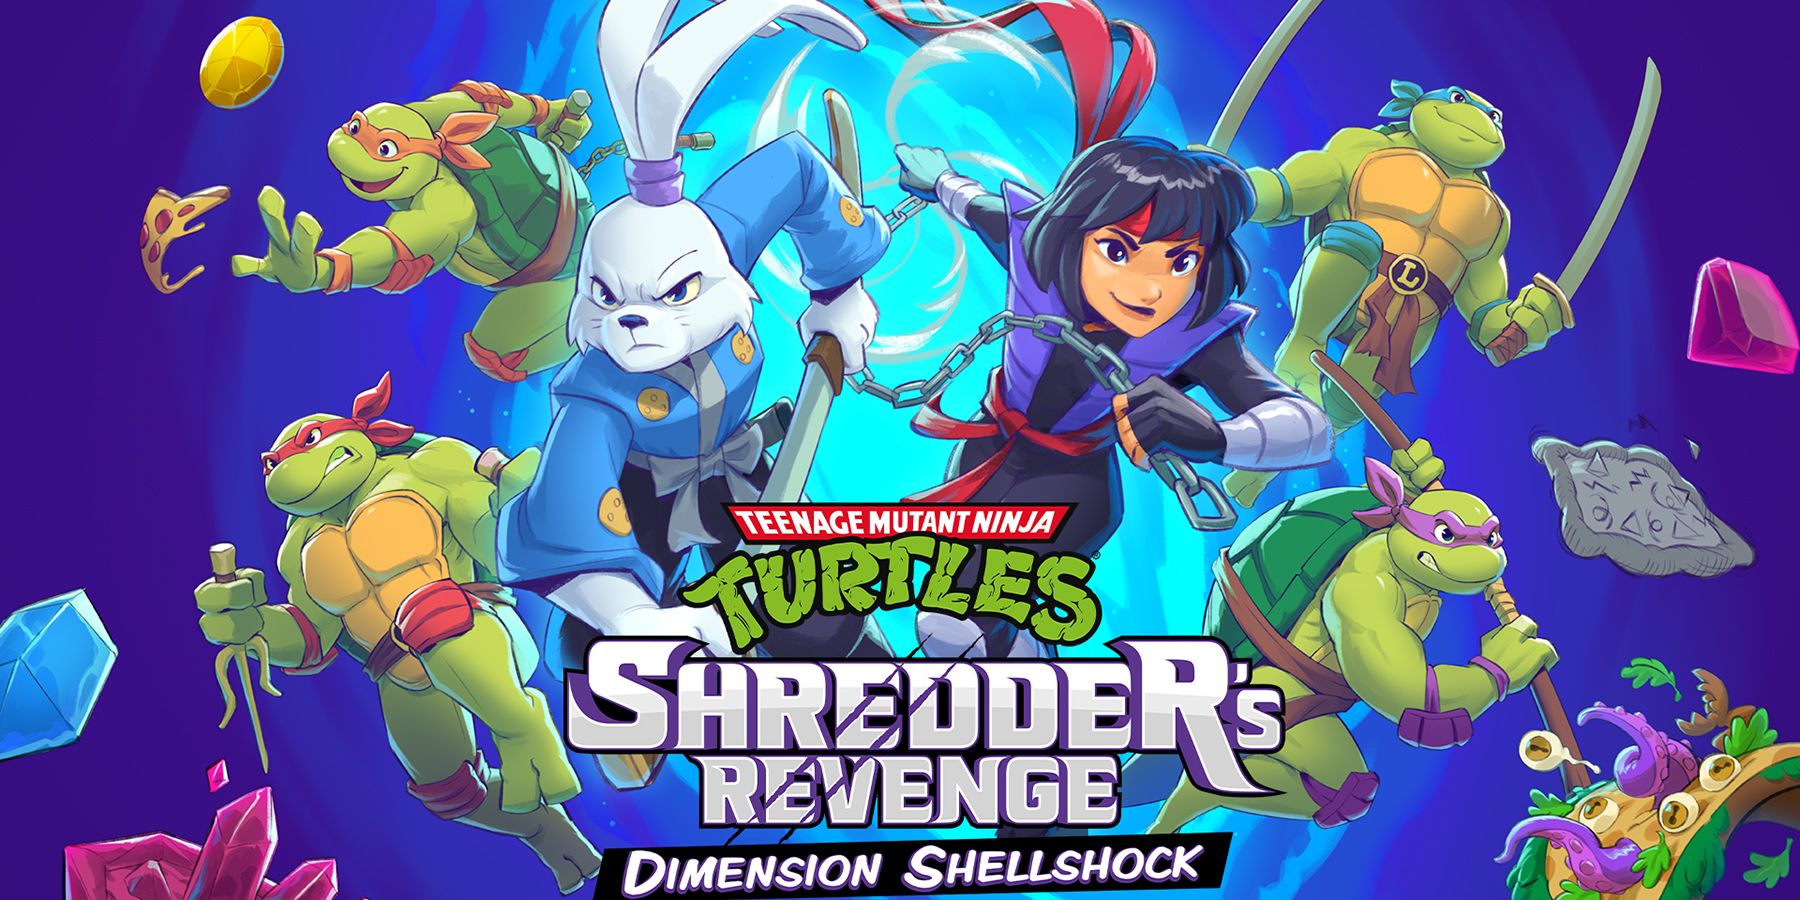 tmnt shredders revenge dimension shellshock